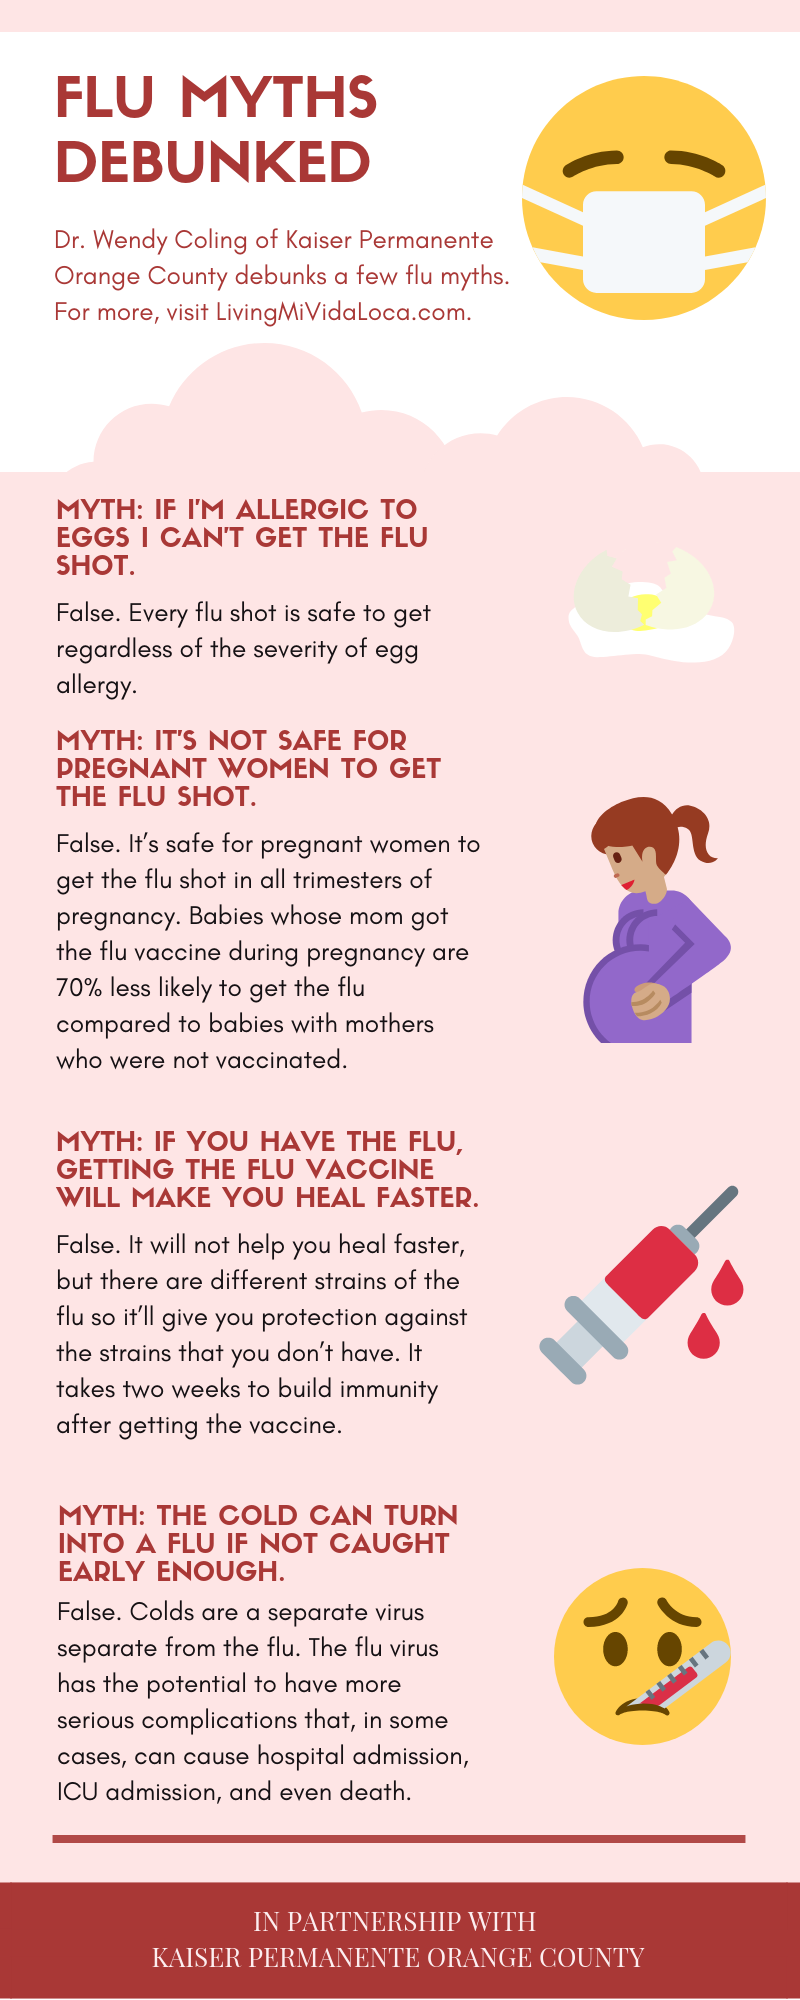 Flu myths debunked by Kaiser Permanente medical professional. | LivingMiVidaLoca.com | #LivingMiVidaLoca #FluShot #FluMyths #FluMythsDebunked #Flu